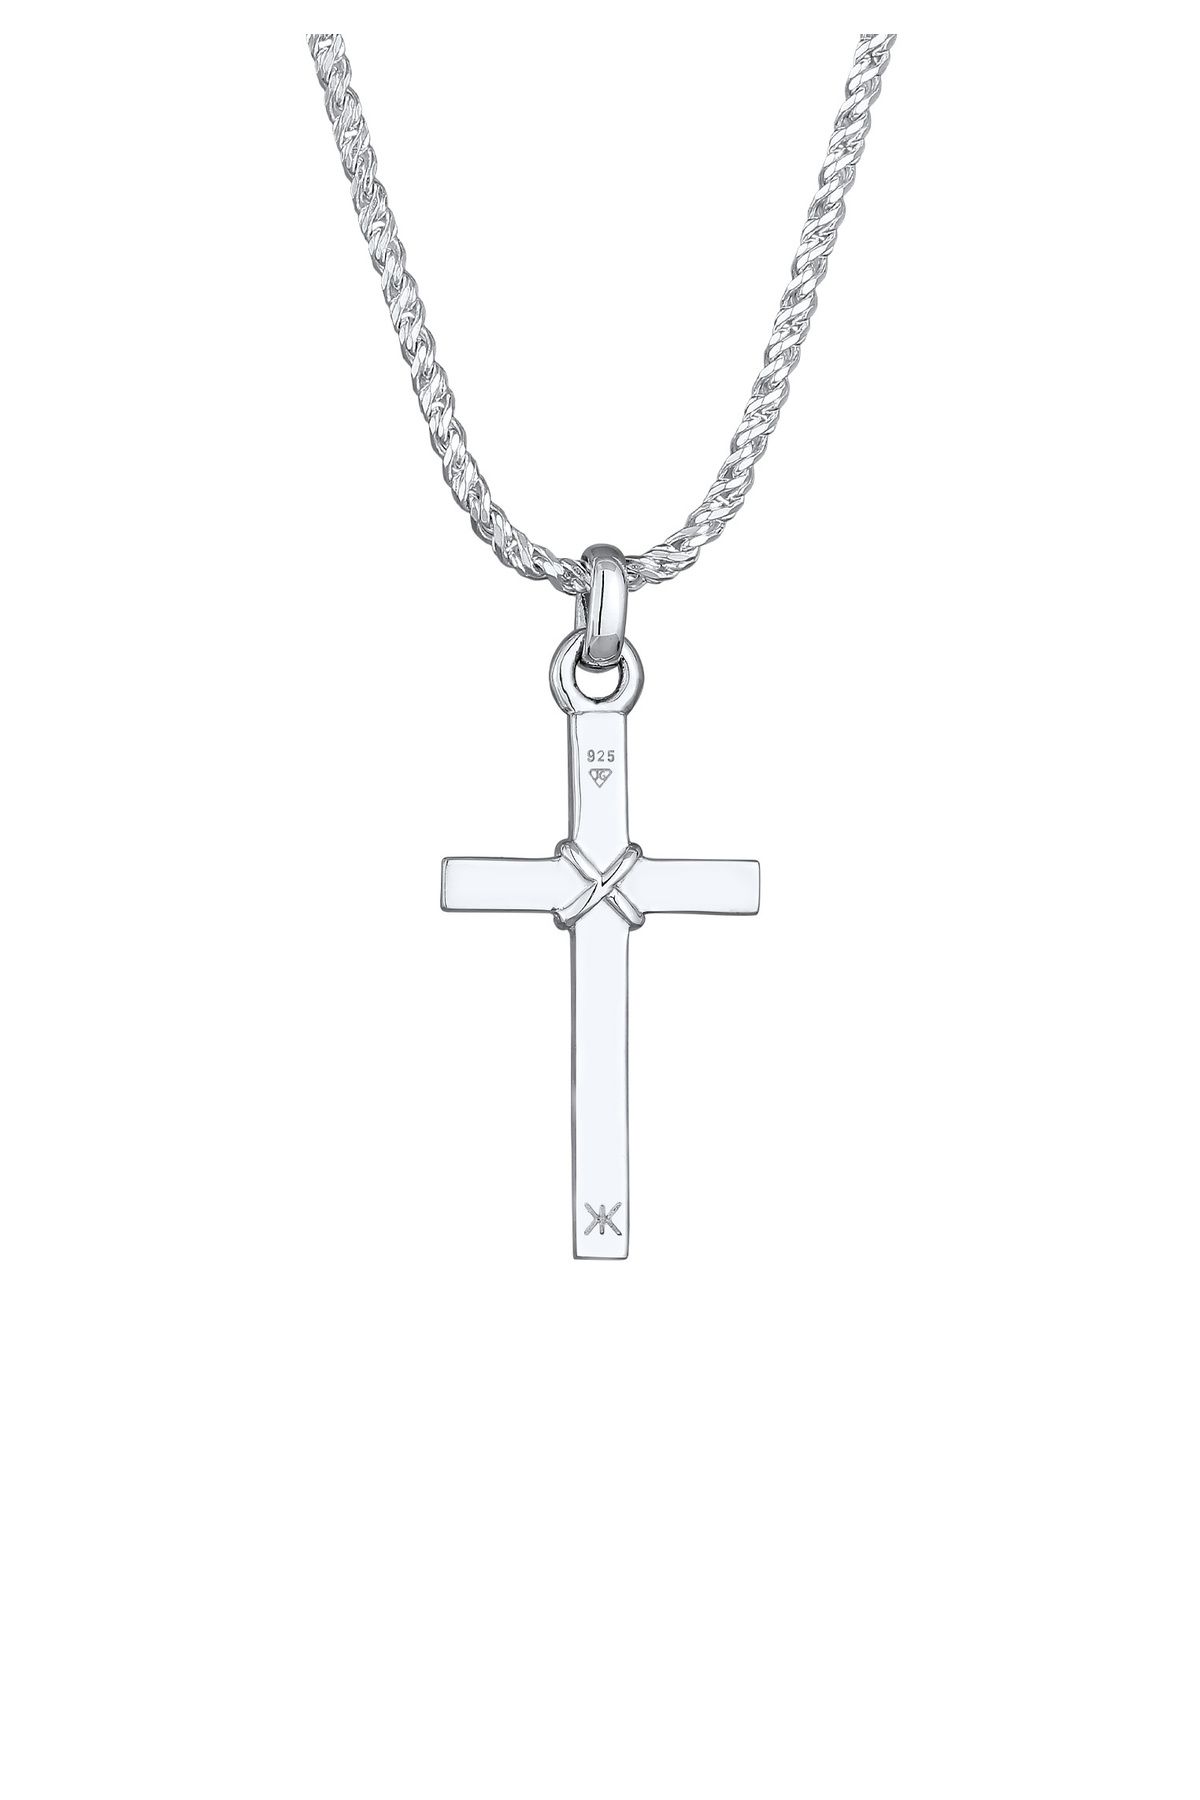 KUZZOI Herren Flach Silber Halskette Kreuz - Trendyol 925 Kordelkette